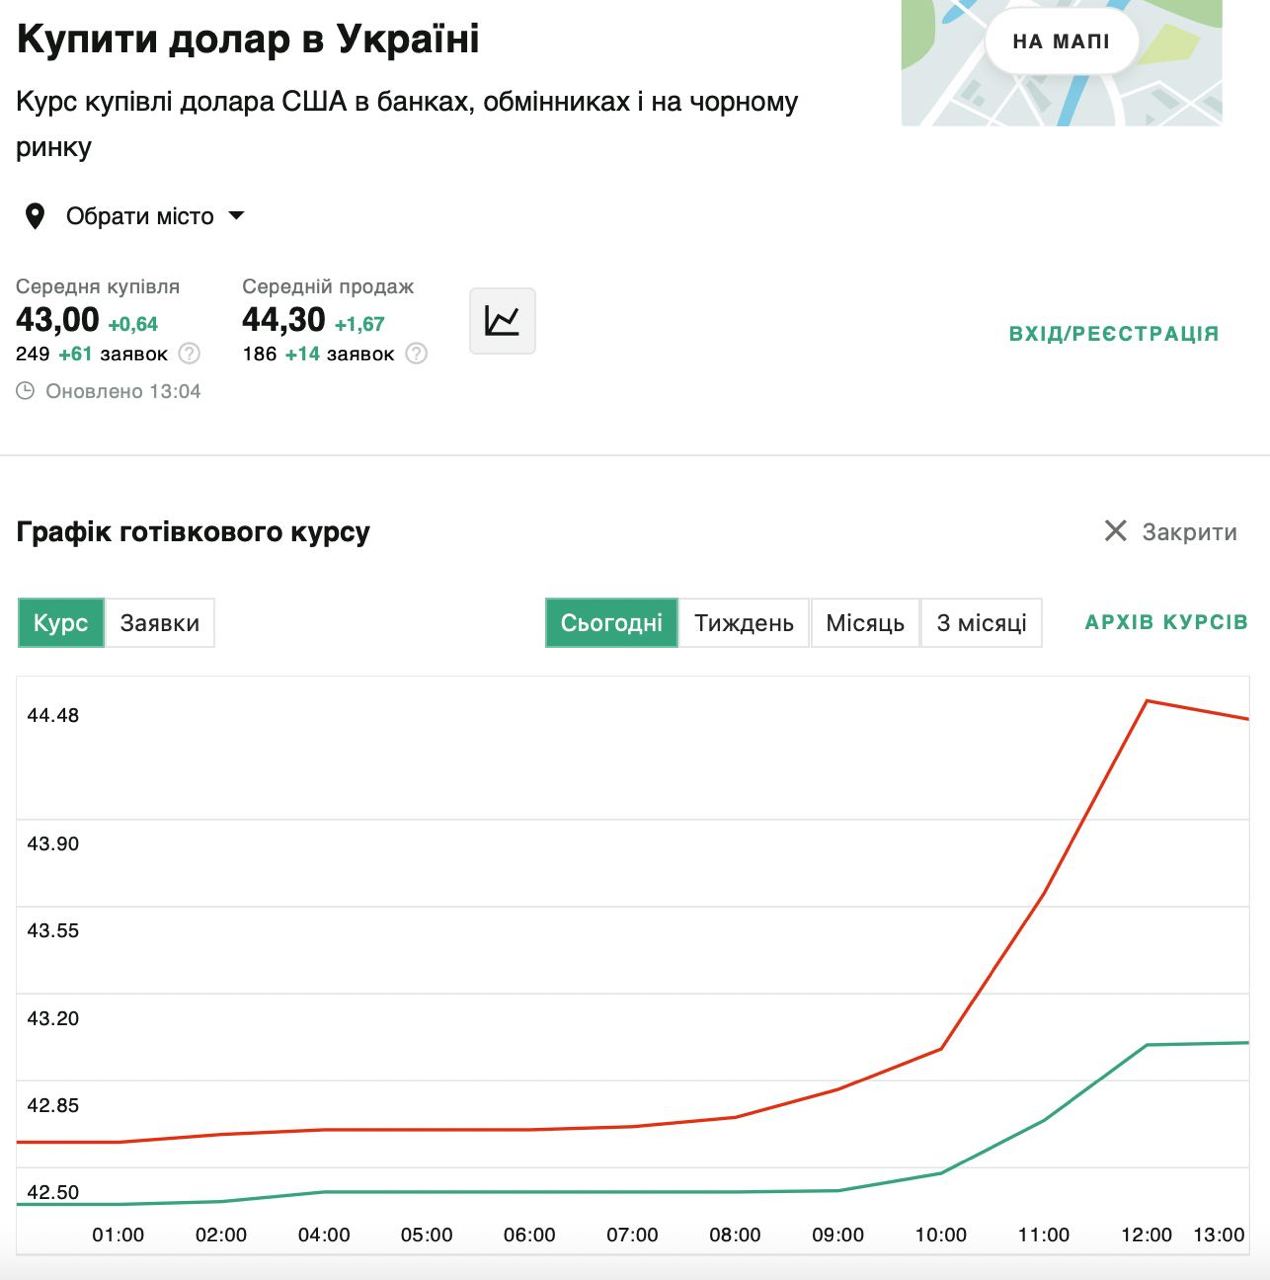 Доллар точно не собирается останавливаться - курс в обменниках Киева уже 44.5-45 грн за 1$.